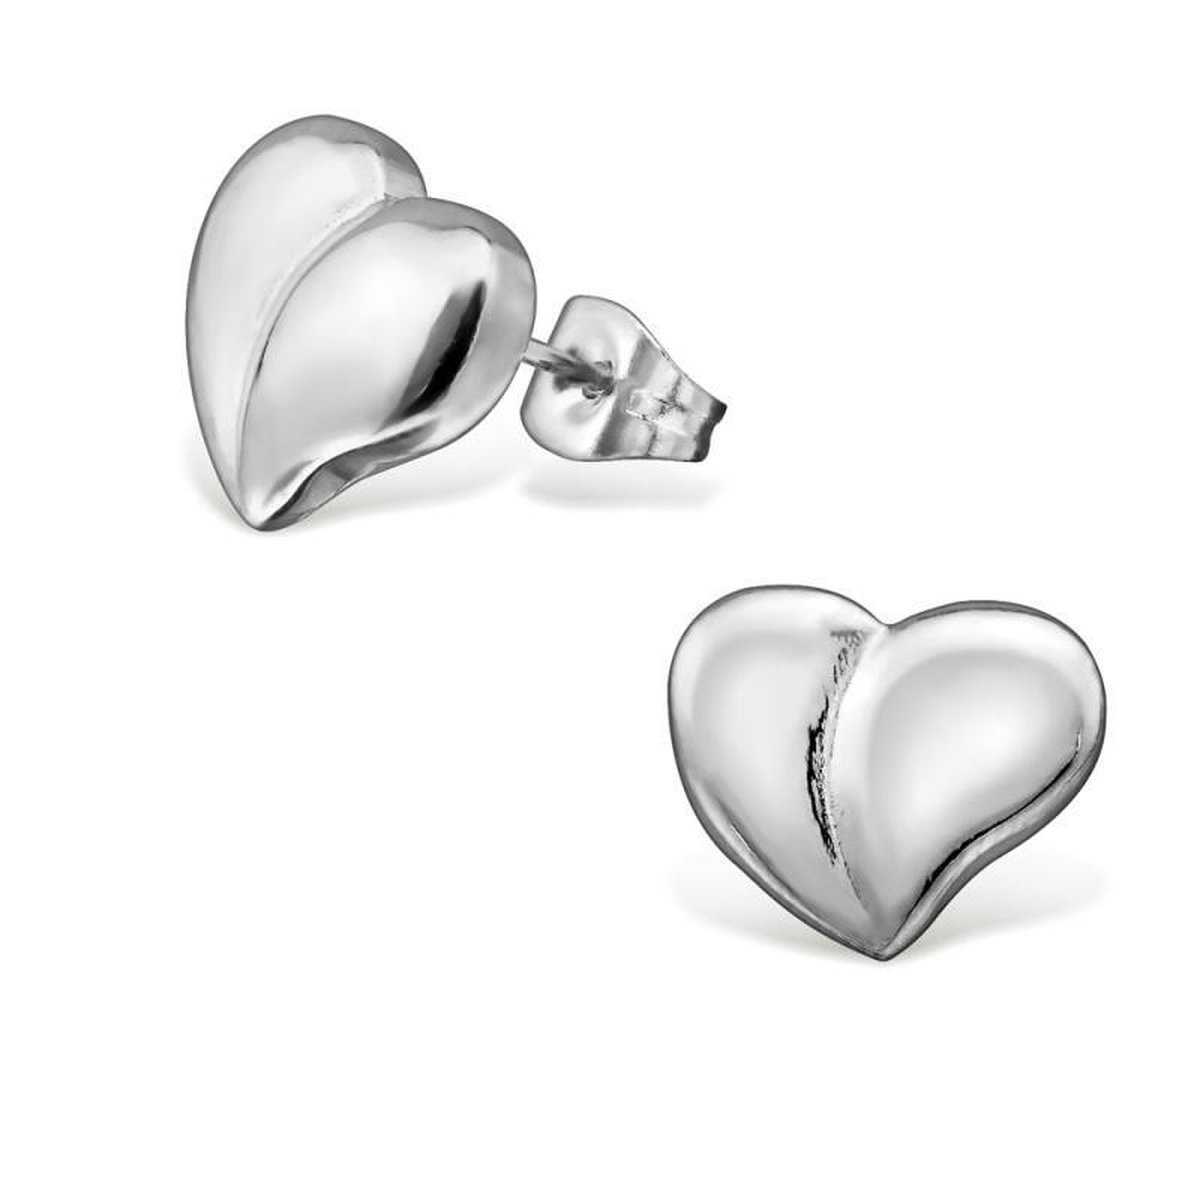 RVS oorbellen-zilverkleurig hart oorbellen